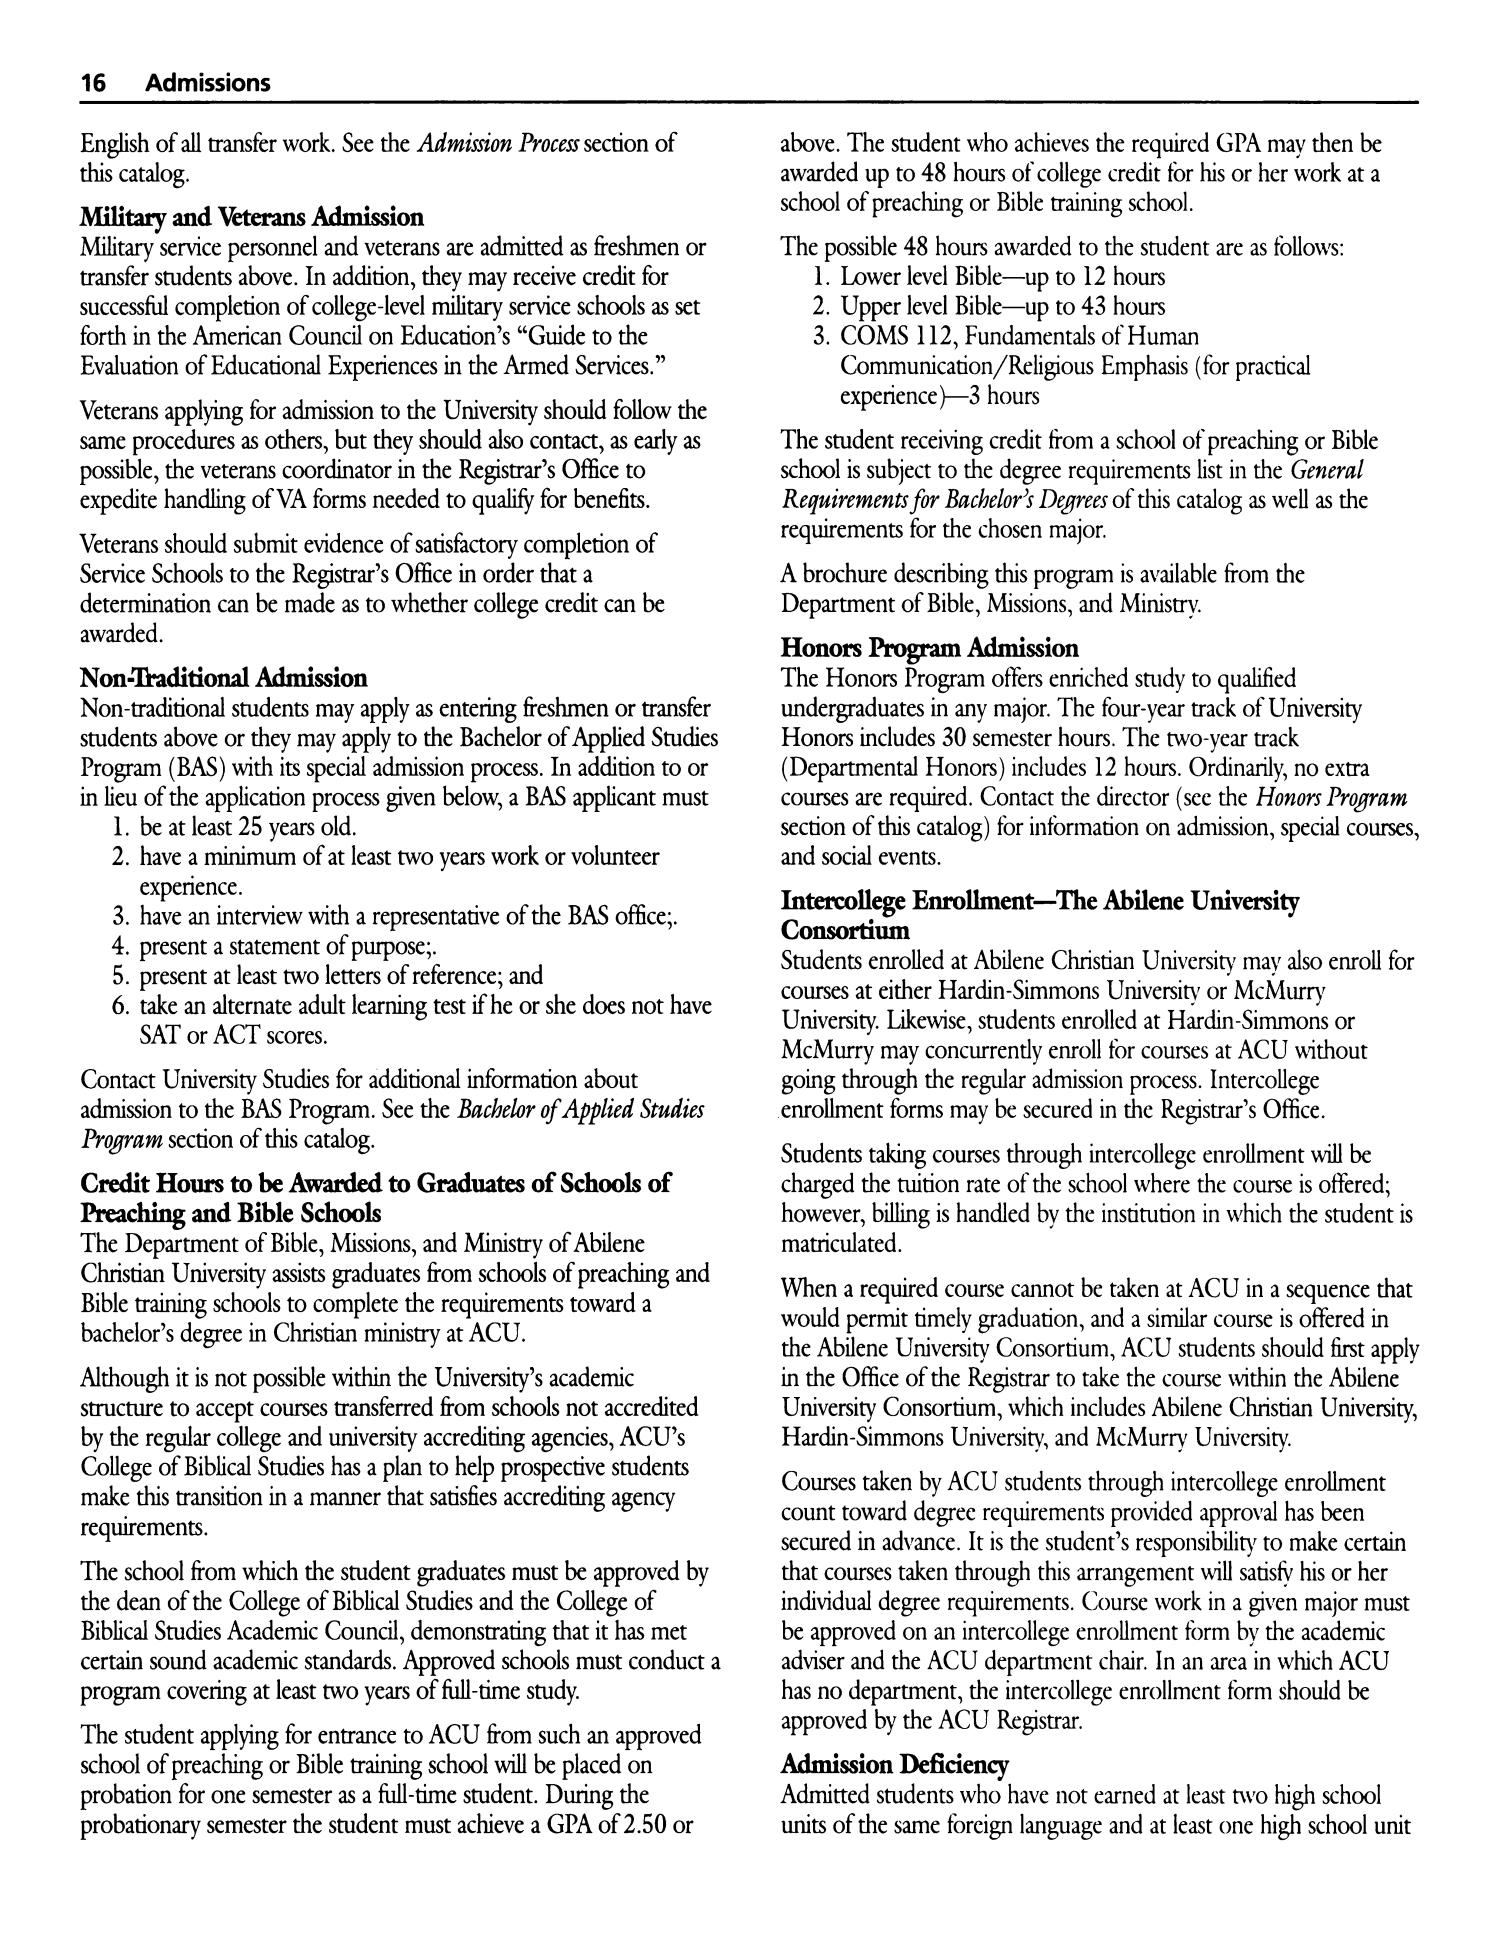 Catalog of Abilene Christian University, 2000-2001
                                                
                                                    16
                                                